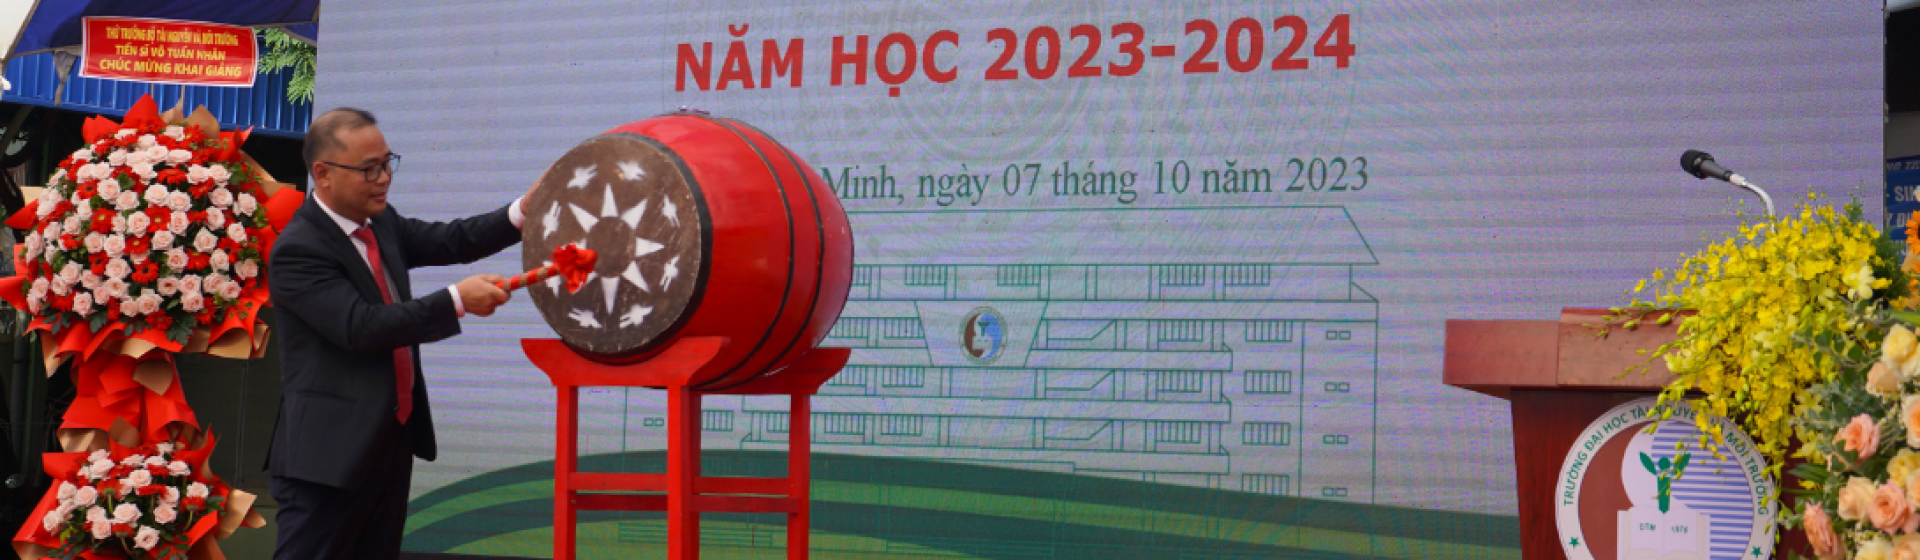 PGS.TS Huỳnh Quyền – Hiệu trưởng Trường đánh trống Khai giảng năm học 2023-2024